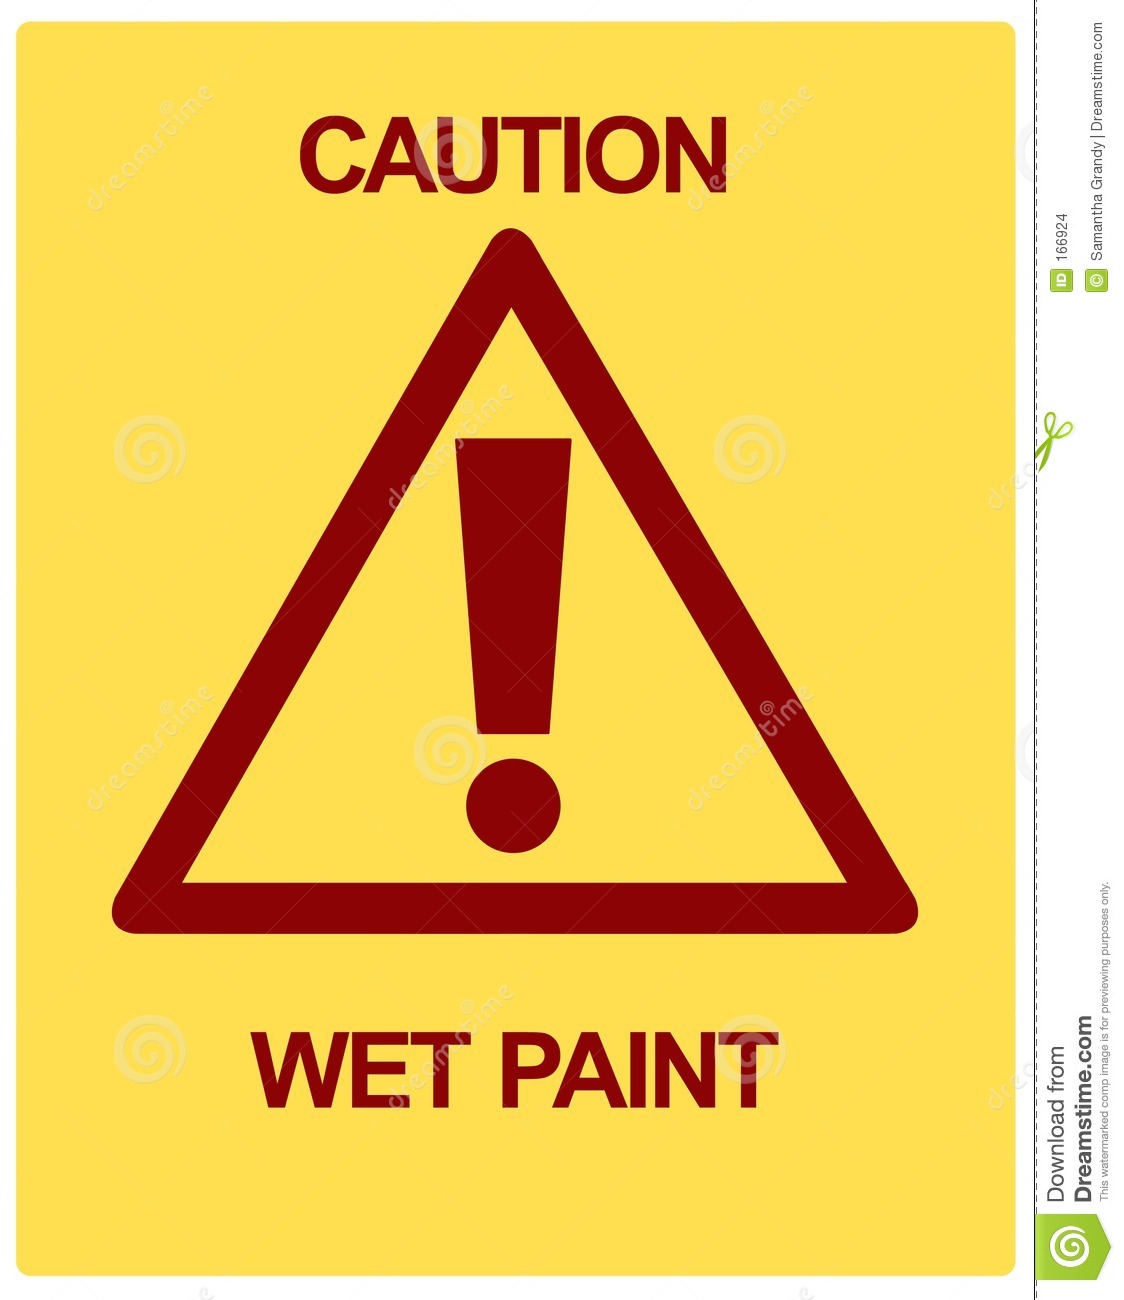 Caution Wet Paint Stock Images   Image  166924